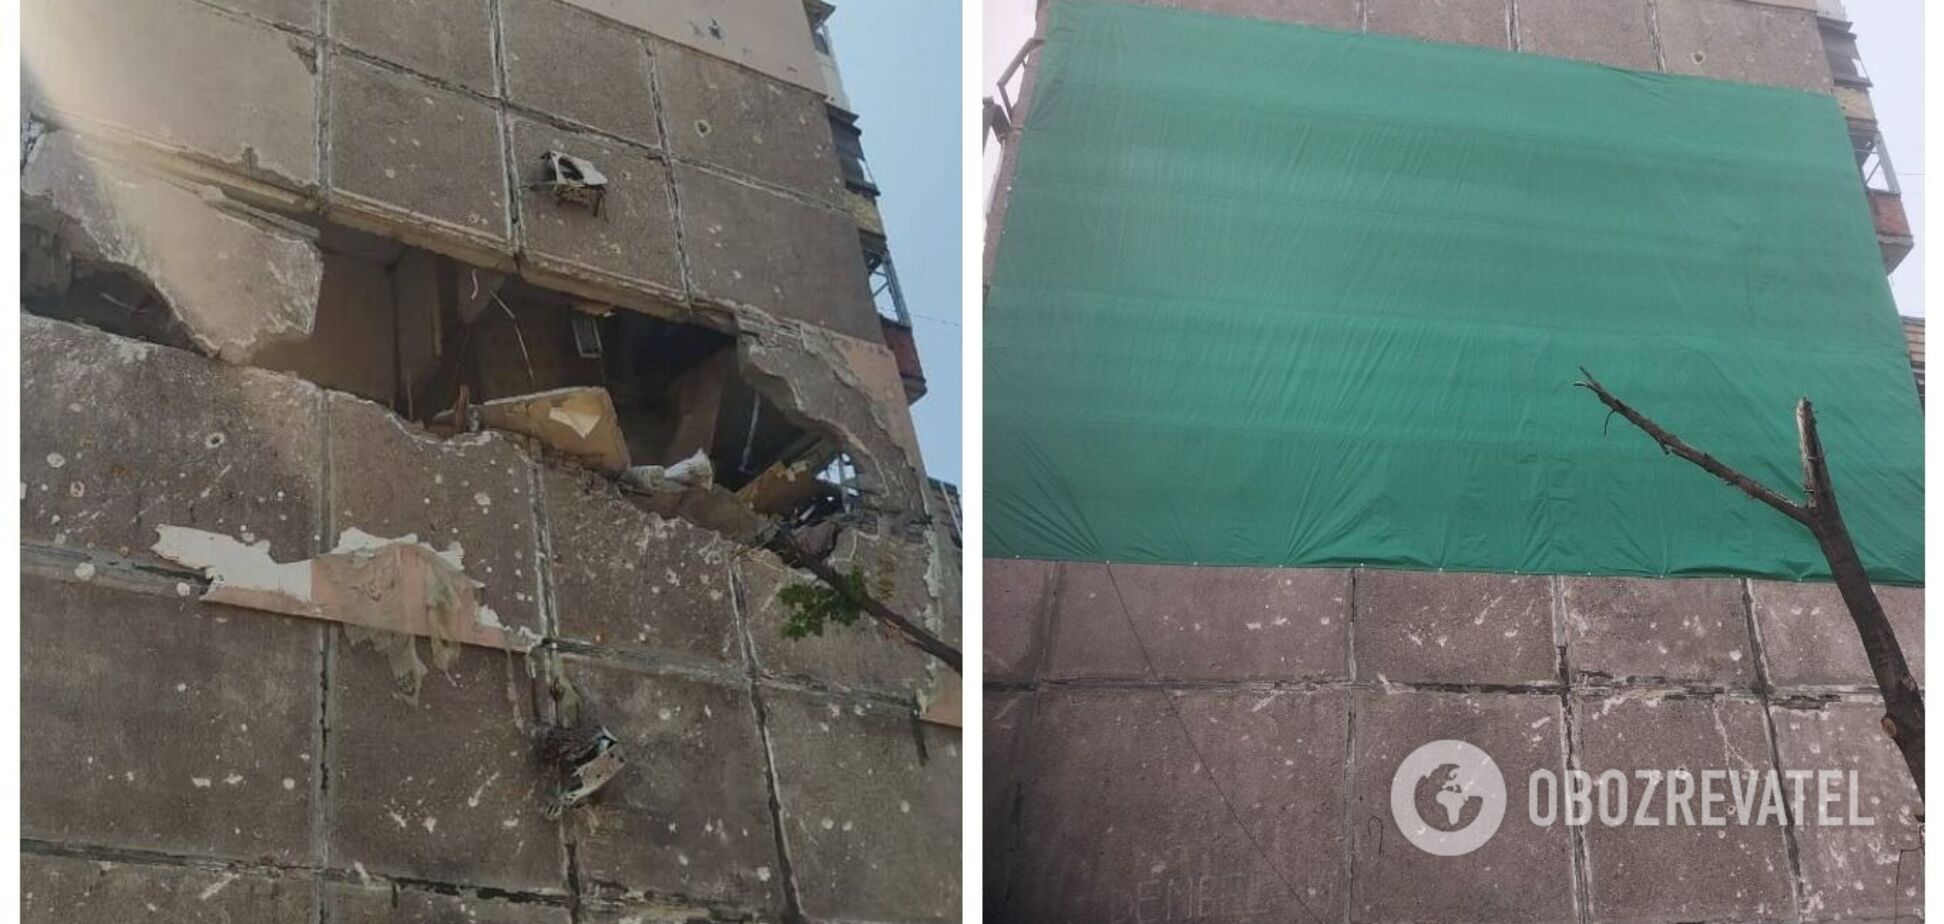 Закрыли стену куском брезента: в сети показали, как выглядит ремонт от оккупантов в Мариуполе. Фото